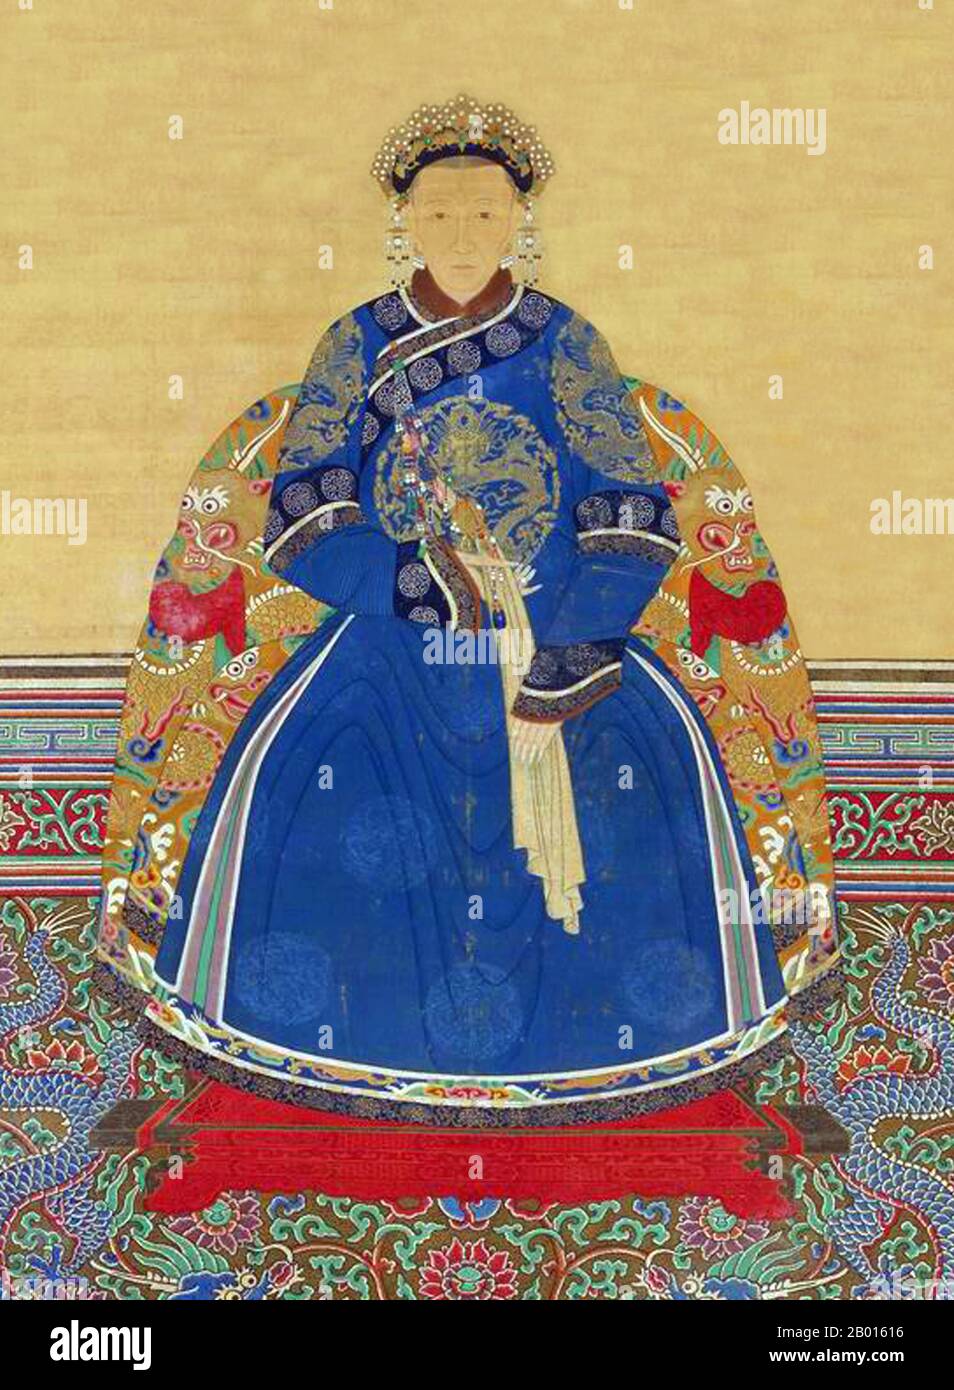 Cina: Imperatrice Xiao Gong Ren (28 aprile 1660 - 25 giugno 1723) quarto consorte dell'imperatore Kangxi. Dipinto a spirale sospeso, 18 ° secolo. L'imperatrice Xiaogongren era una consorte imperiale dell'imperatore Kangxi e madre dell'imperatore Yongzheng. Venne dal clan Uya, del corpo giallo della bandiera di Manchu. Nel 1678 Uya partorì il quarto figlio sopravvissuto dell'imperatore Kangxi, Yin Zhen, il futuro imperatore Yongzheng. Nel 1682 le fu concesso il titolo di Consorte Imperiale De. Quando suo figlio Yinzhen riuscì al trono nel 1722, ricevette il titolo di 'imperatrice Dowager Renshou'. Passò via nel 1723 Foto Stock